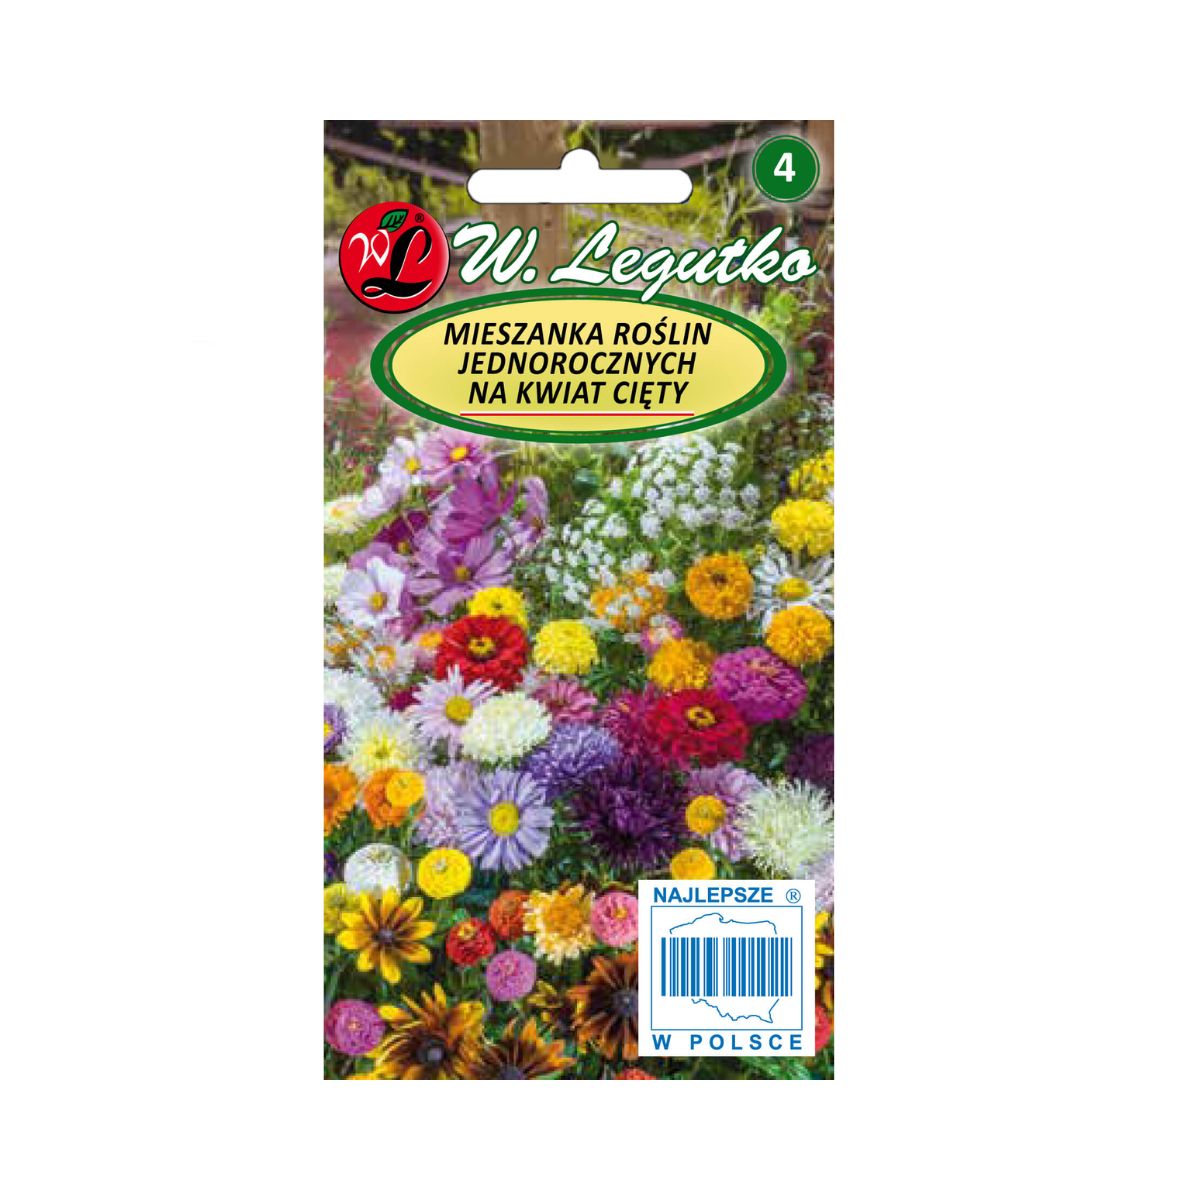 Seminte flori - Seminte amestec de plante inalte pentru taiat, 0,5 gr, LEGUTKO, hectarul.ro